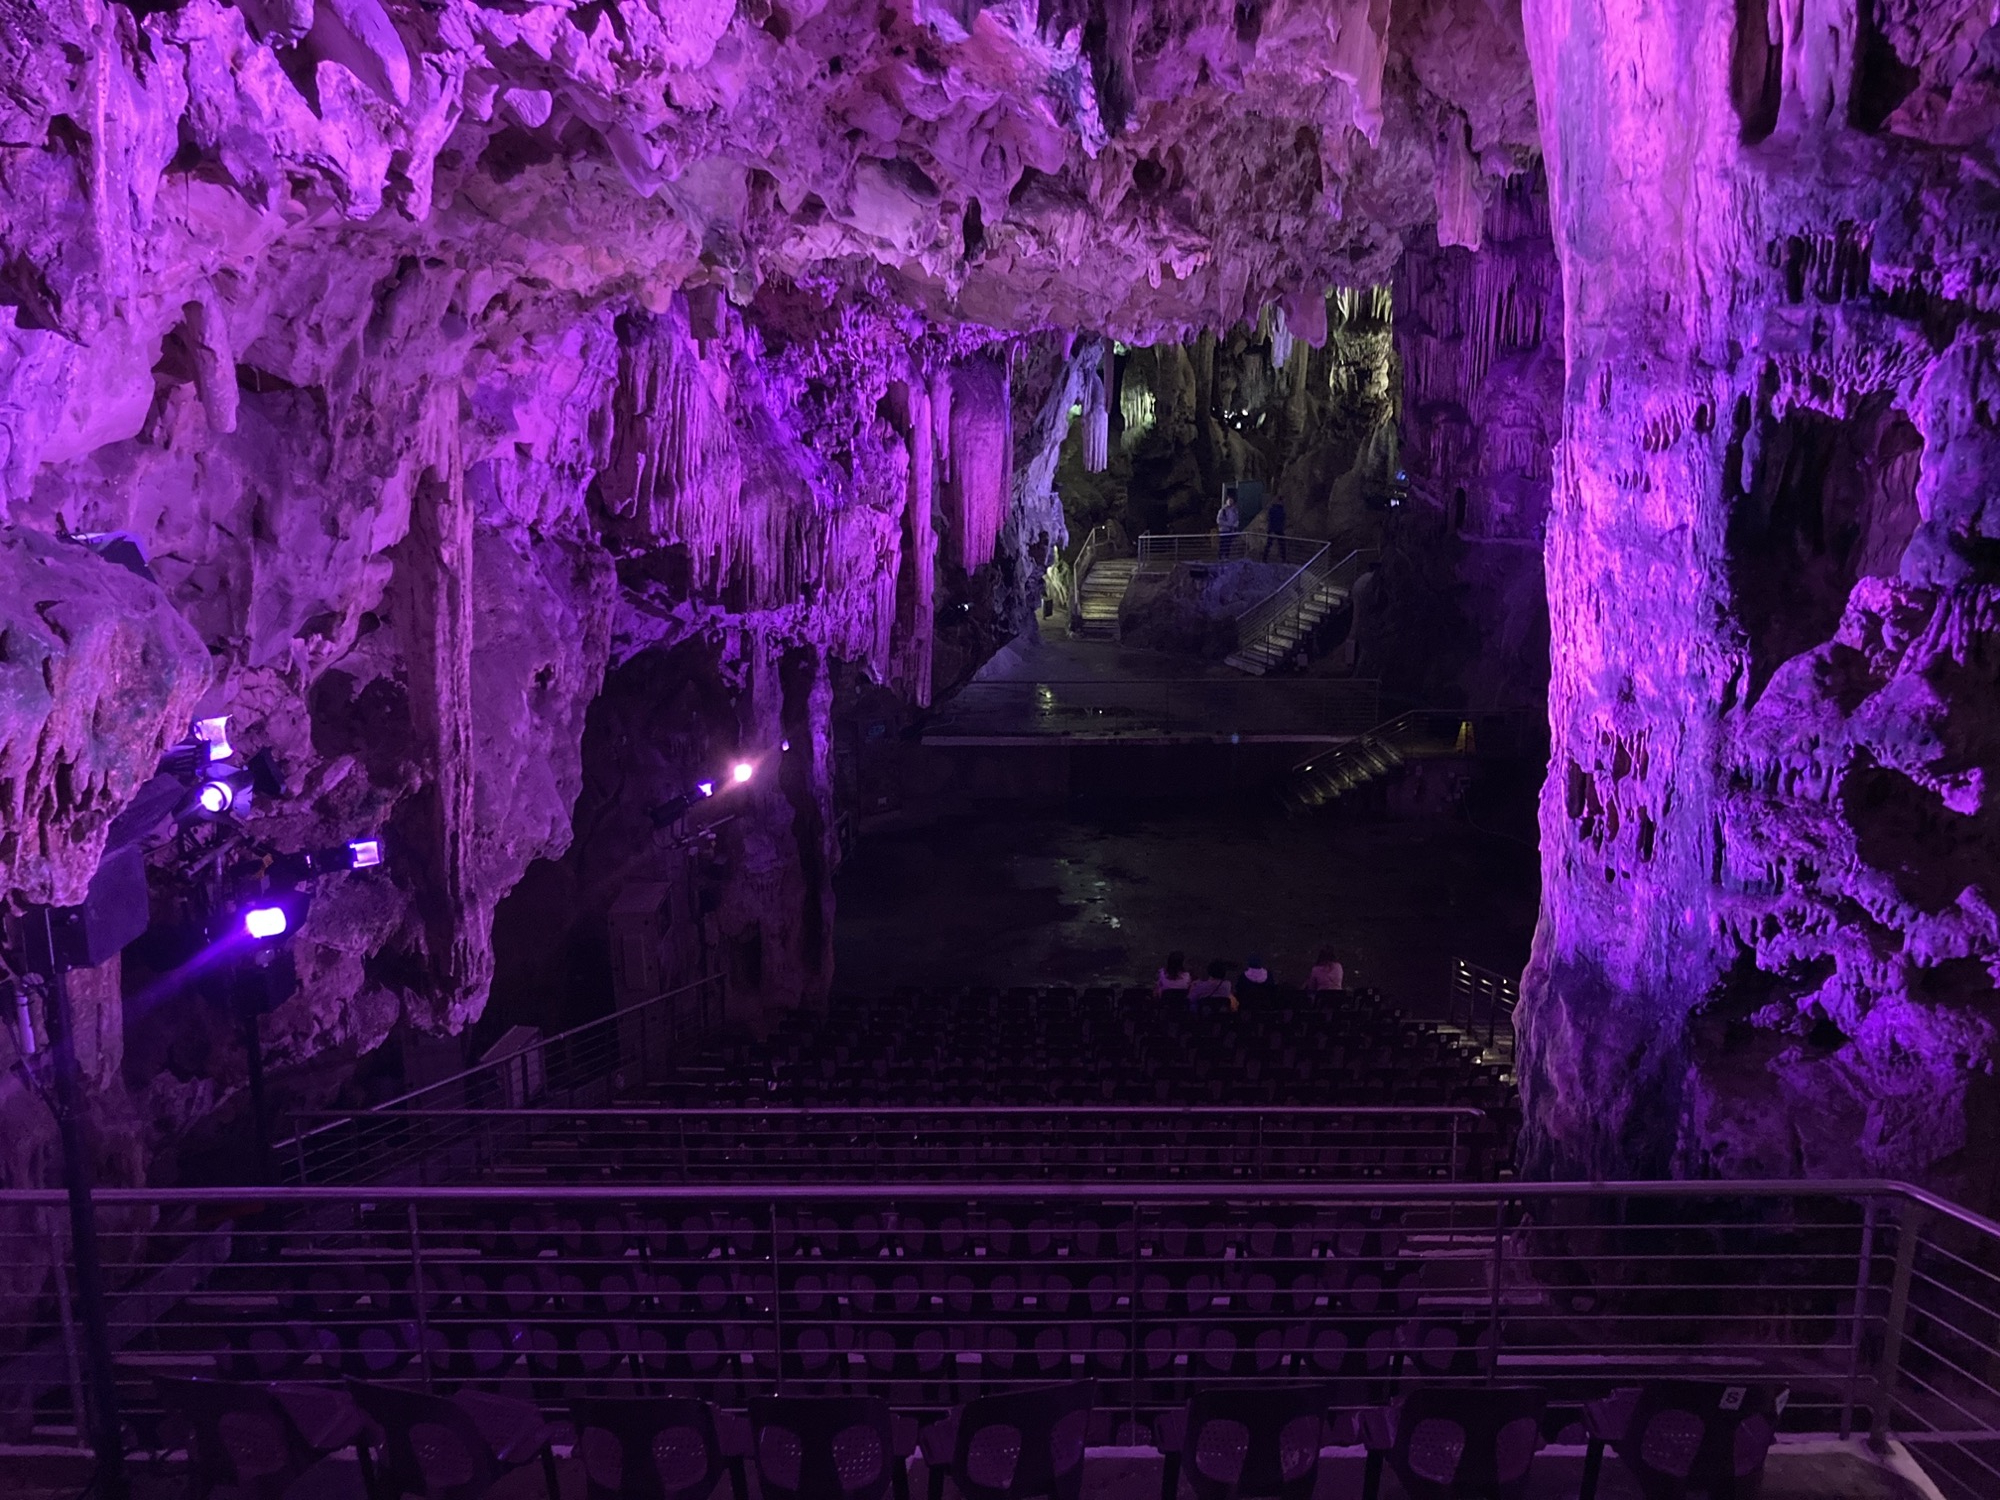 Auditorium in der großen Halle der Höhle, Blick aus dem Zuschauerraum Richtung Bühne, das gesamte Bild ist in violettes Licht getaucht, in der ersten Reihe sitzen vier Personen mit dem Rücken zur Kamera, auf dem Bühneboden spiegelt sich das bunte Licht in Wasser, das von der Decke getropft ist